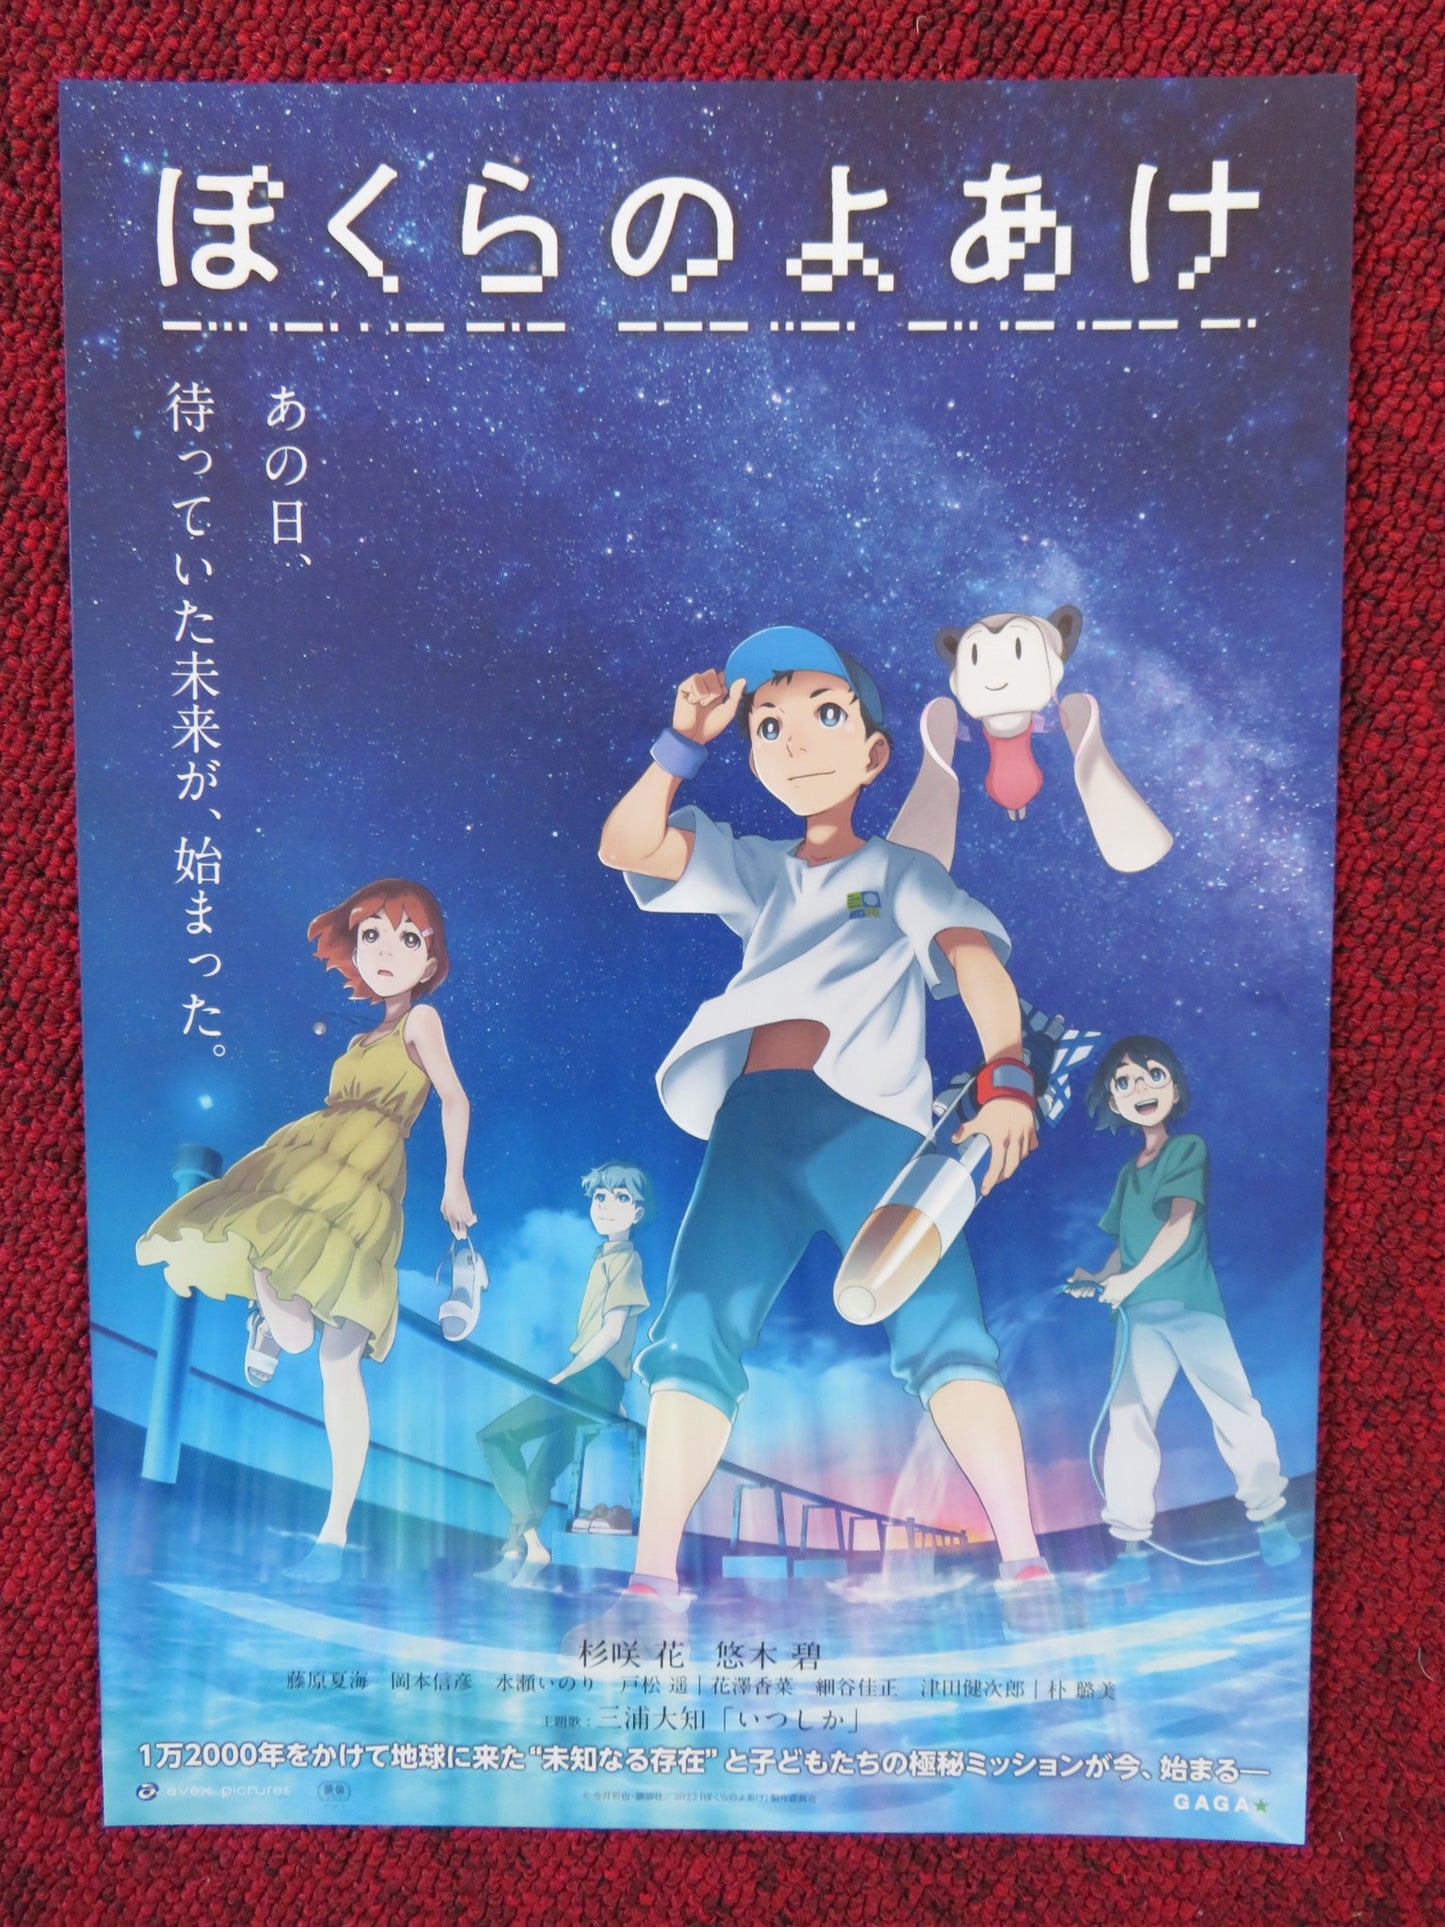 Aoi Yuki movie posters